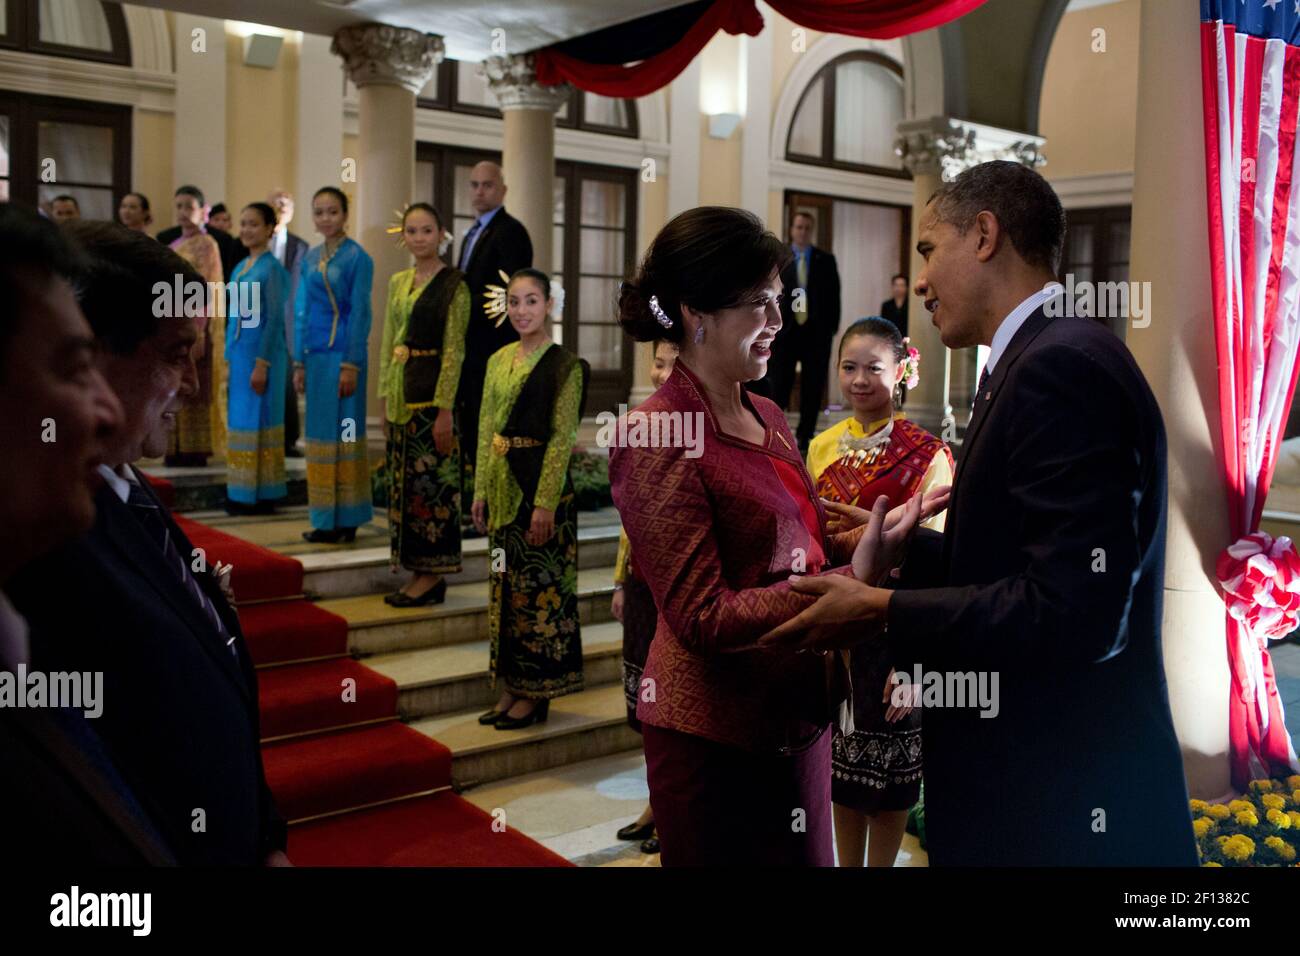 Präsident Barack Obama spricht mit dem thailändischen Premierminister Yingluck Shinawatra, bevor er am 18 2012. November das Regierungsgebäude in Bangkok, Thailand, verlässt. Thailändische Begrüßungskünstler säumen die Treppen. Stockfoto